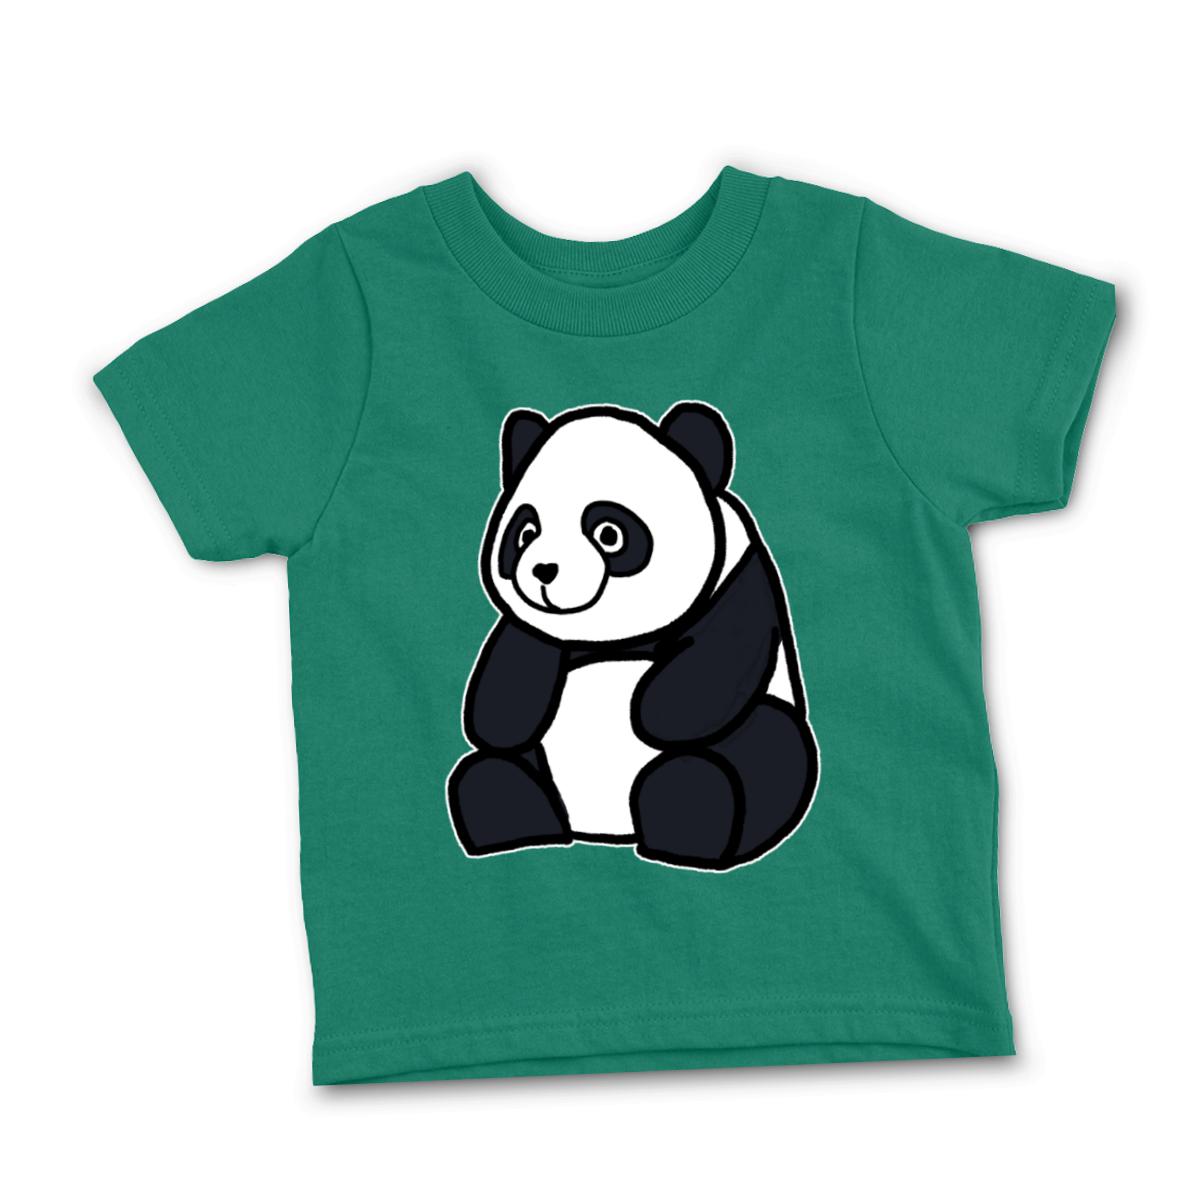 Panda Toddler Tee 4T kelly